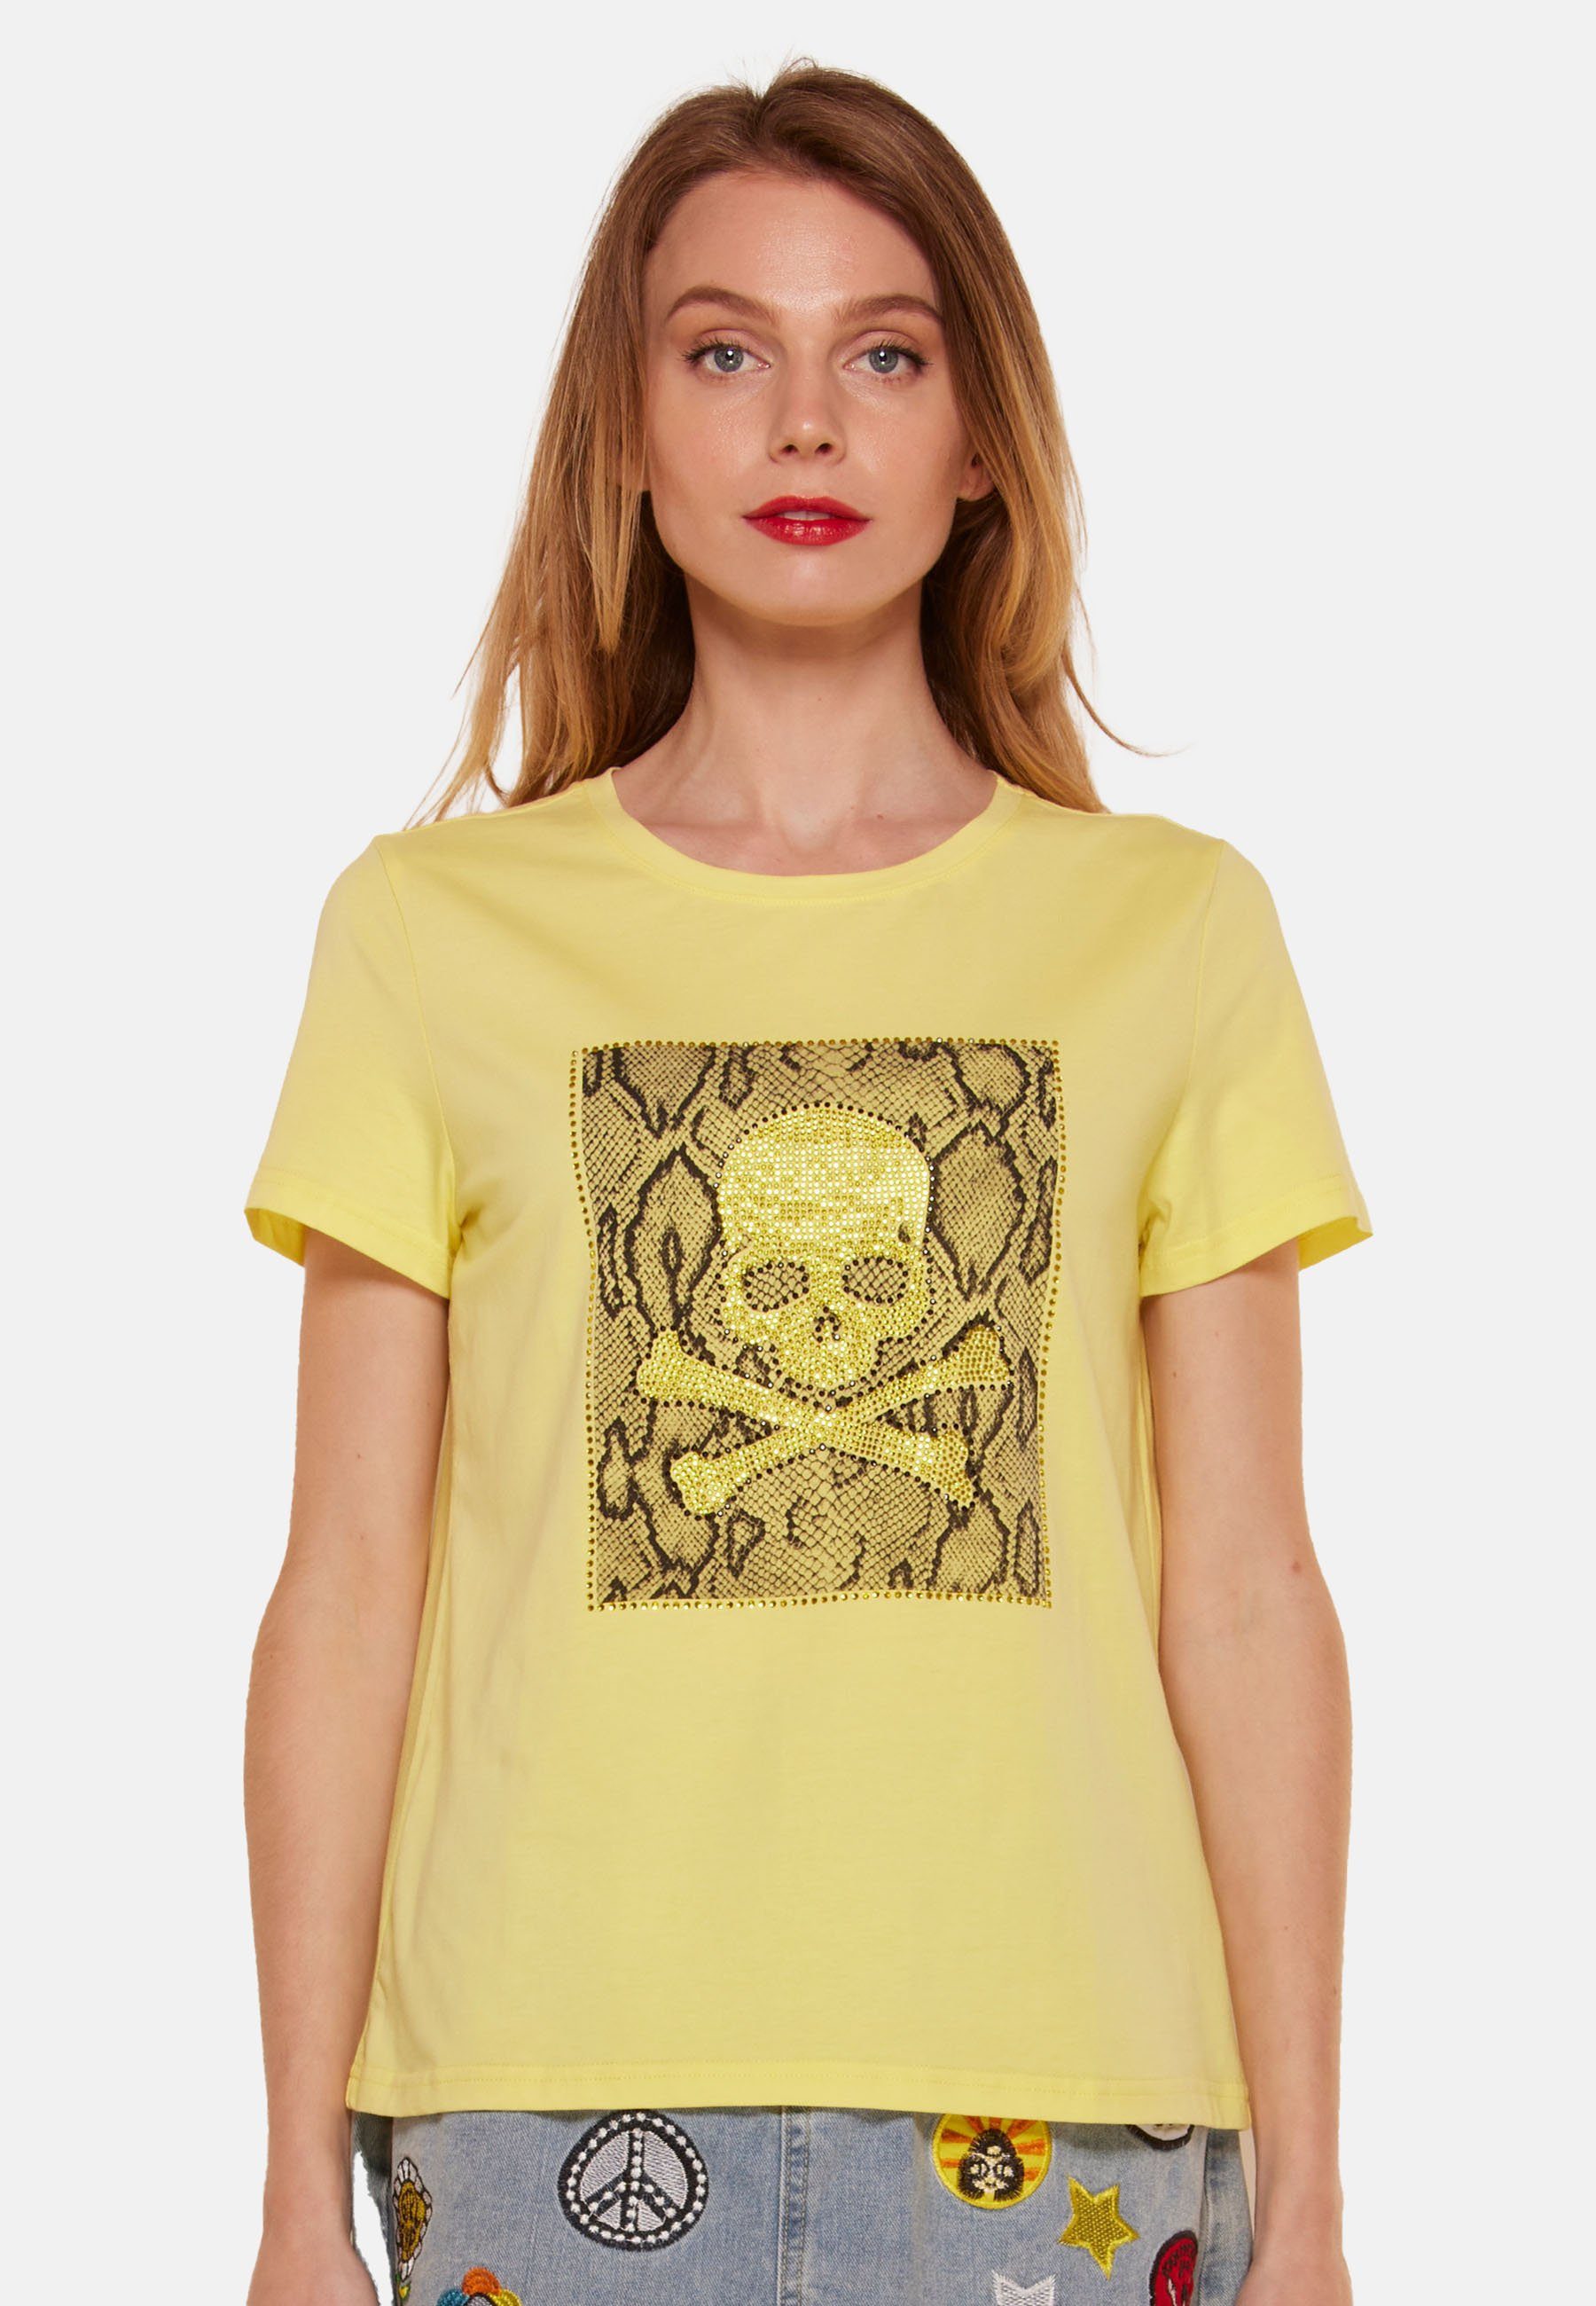 Tooche Print-Shirt T-shirt Totenkopf YELLOW